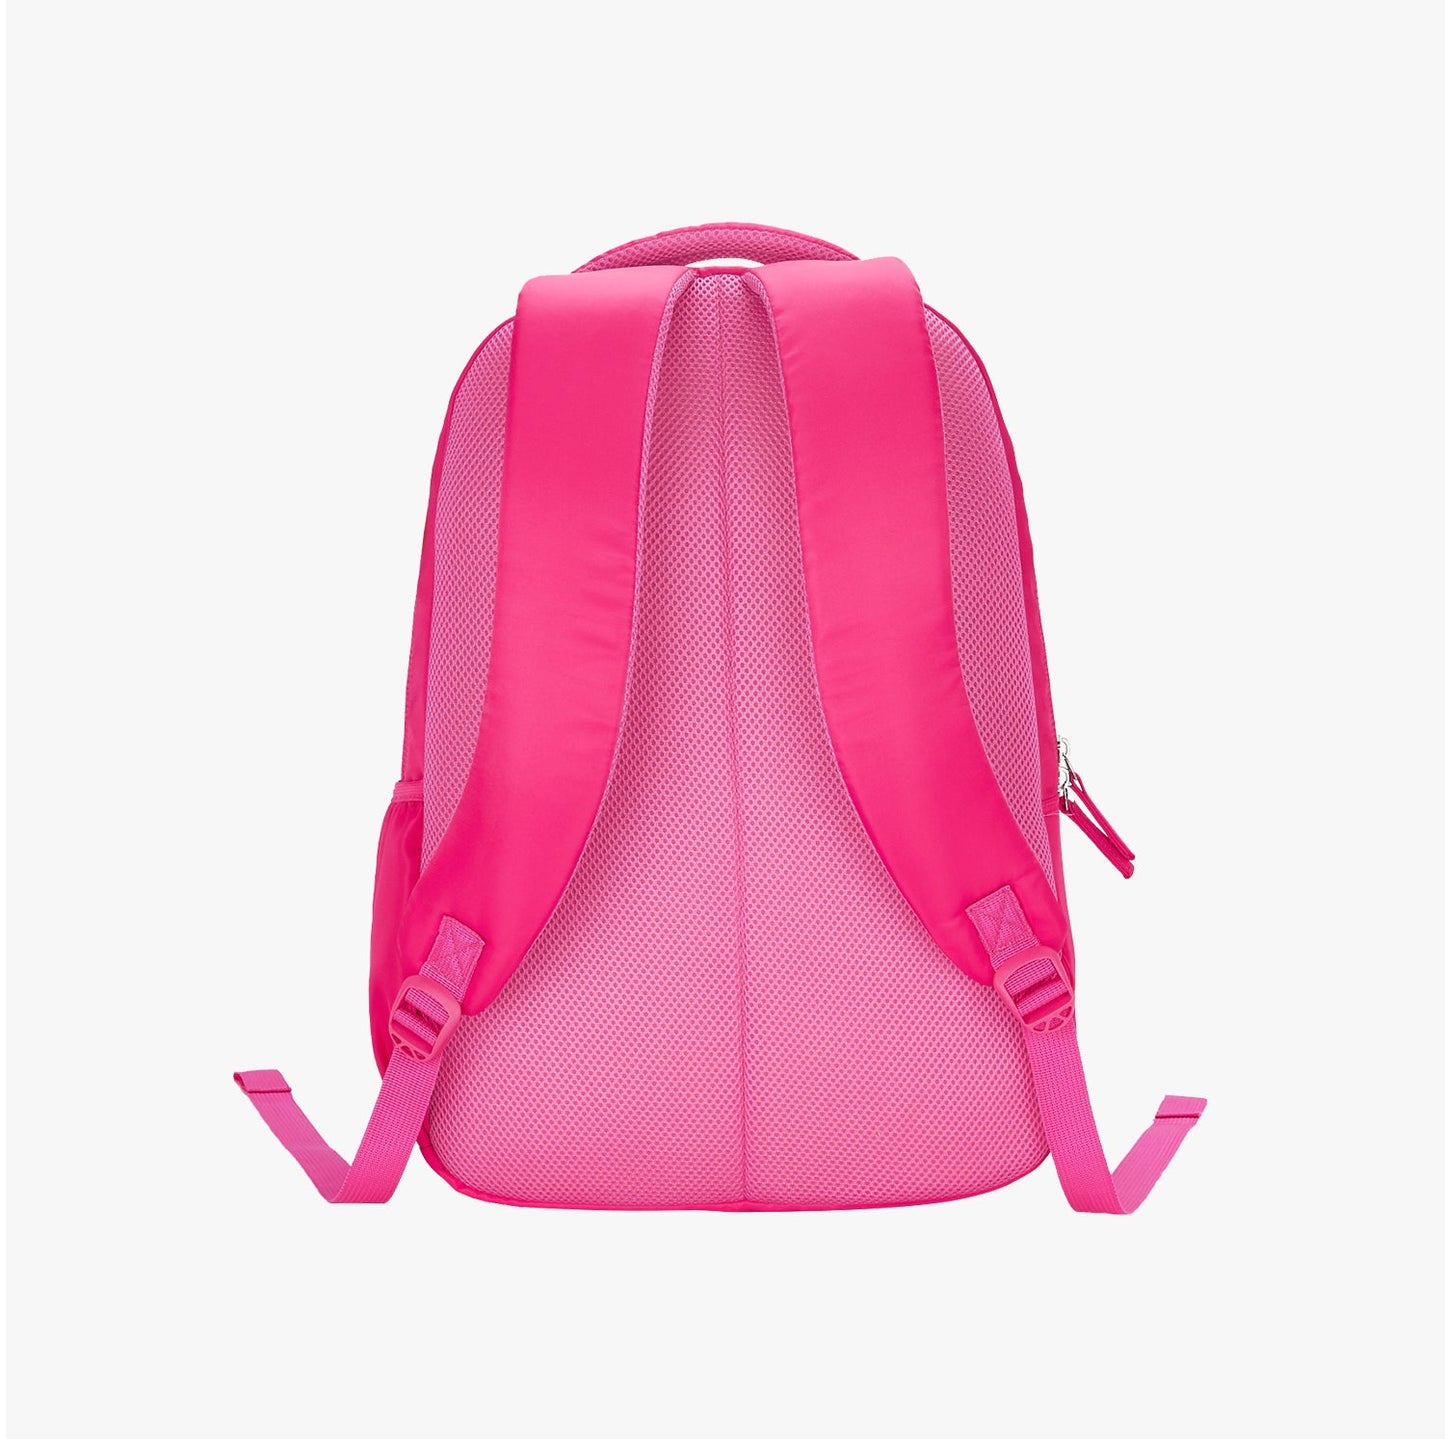 Genie Zinnia 19 Inch Backpack